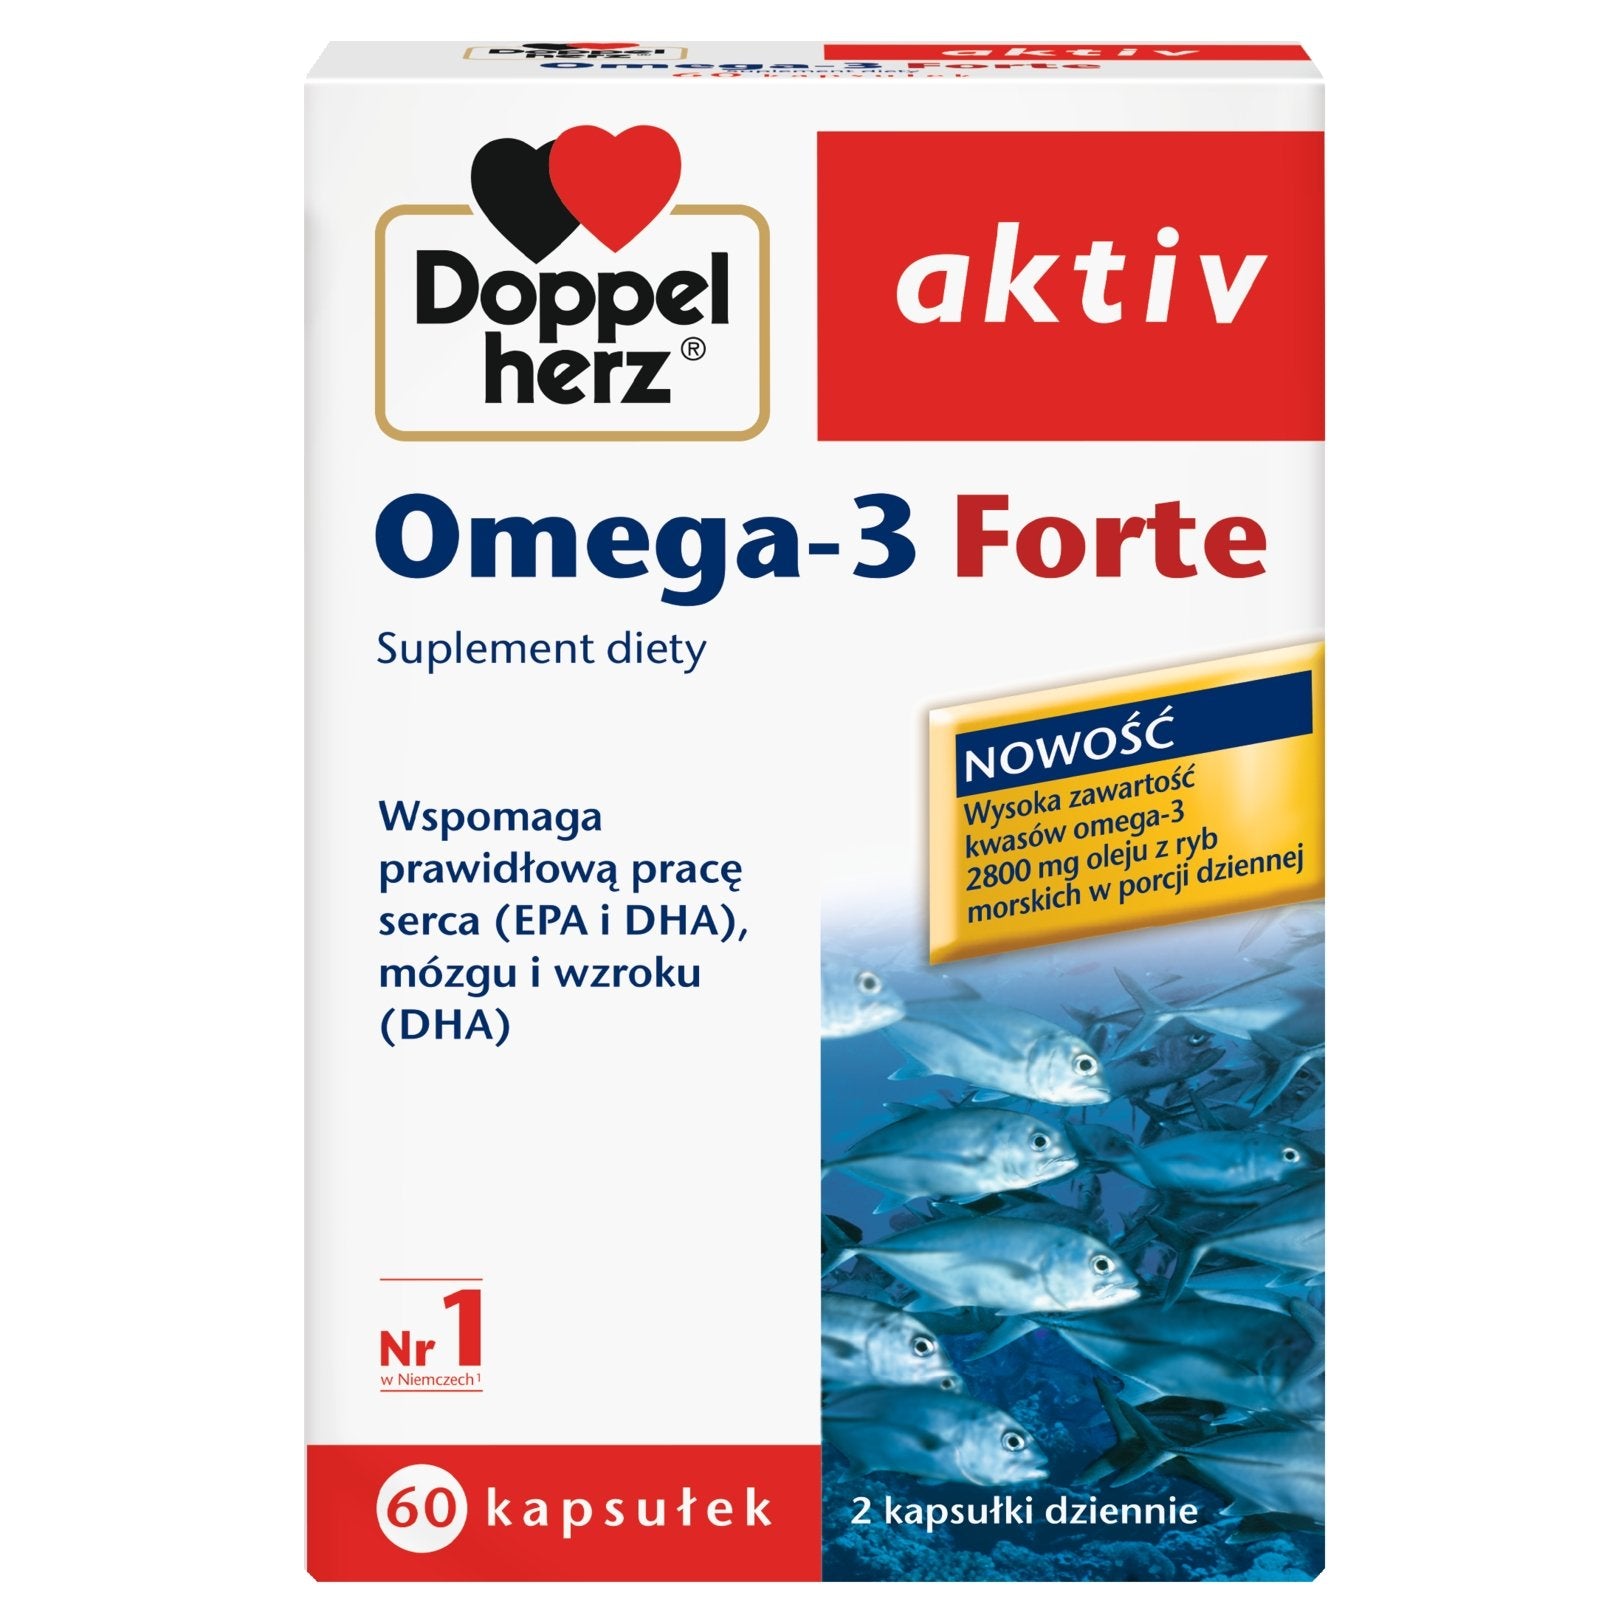 Žuvų taukai Omega-3 Forte, Doppelherz aktiv, Maisto papildas, 60 kapsulių kaina